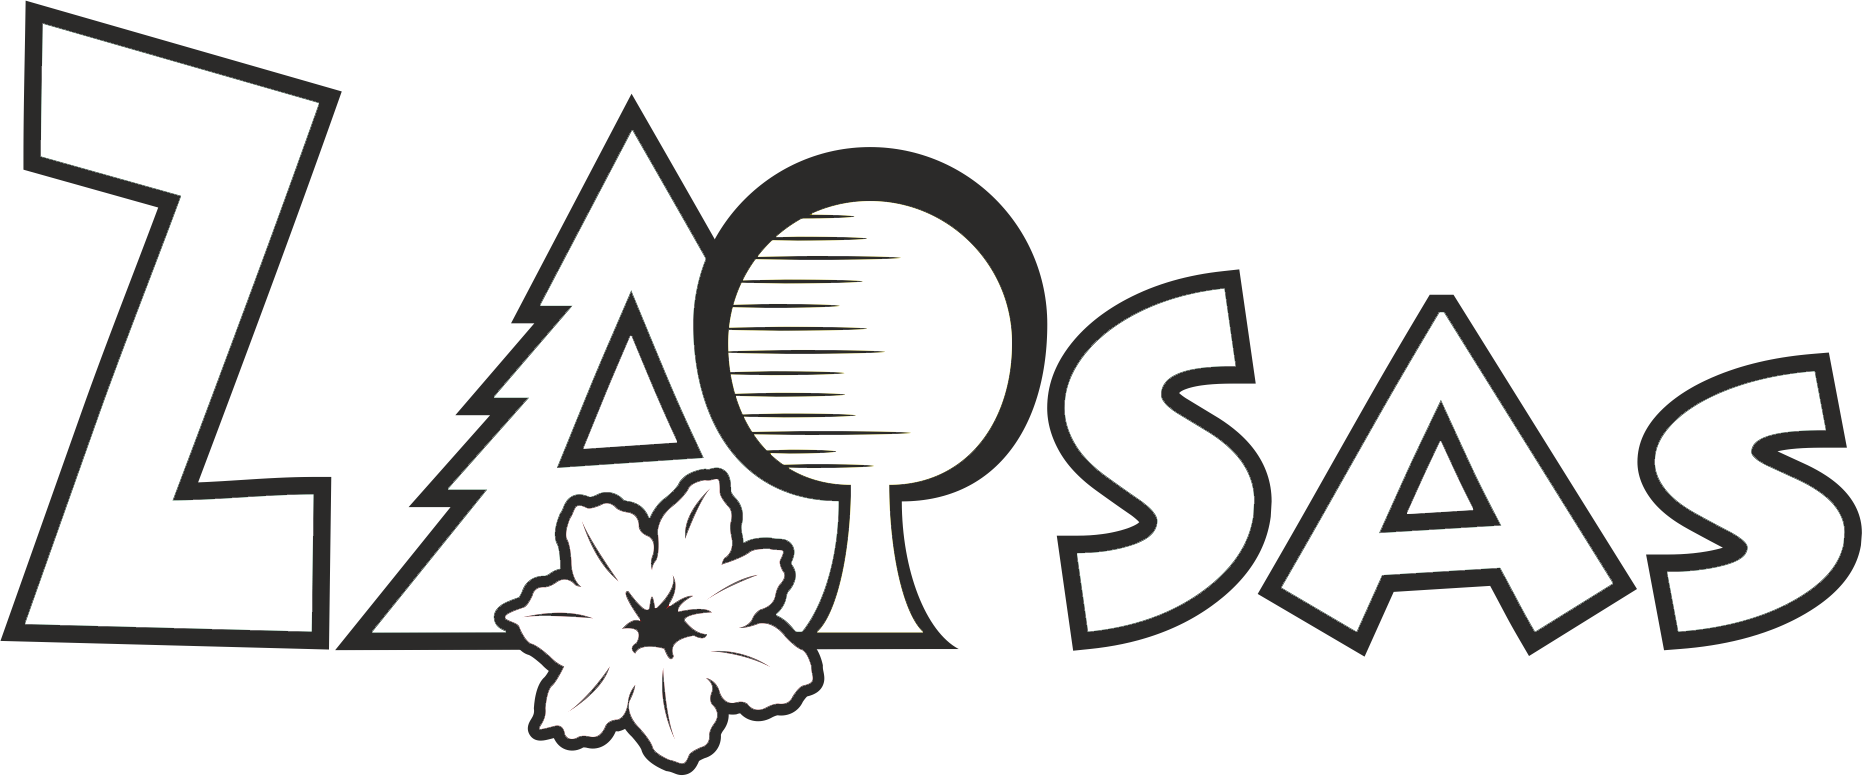 Zasas - záhradnícke a sadovnícke služby logo